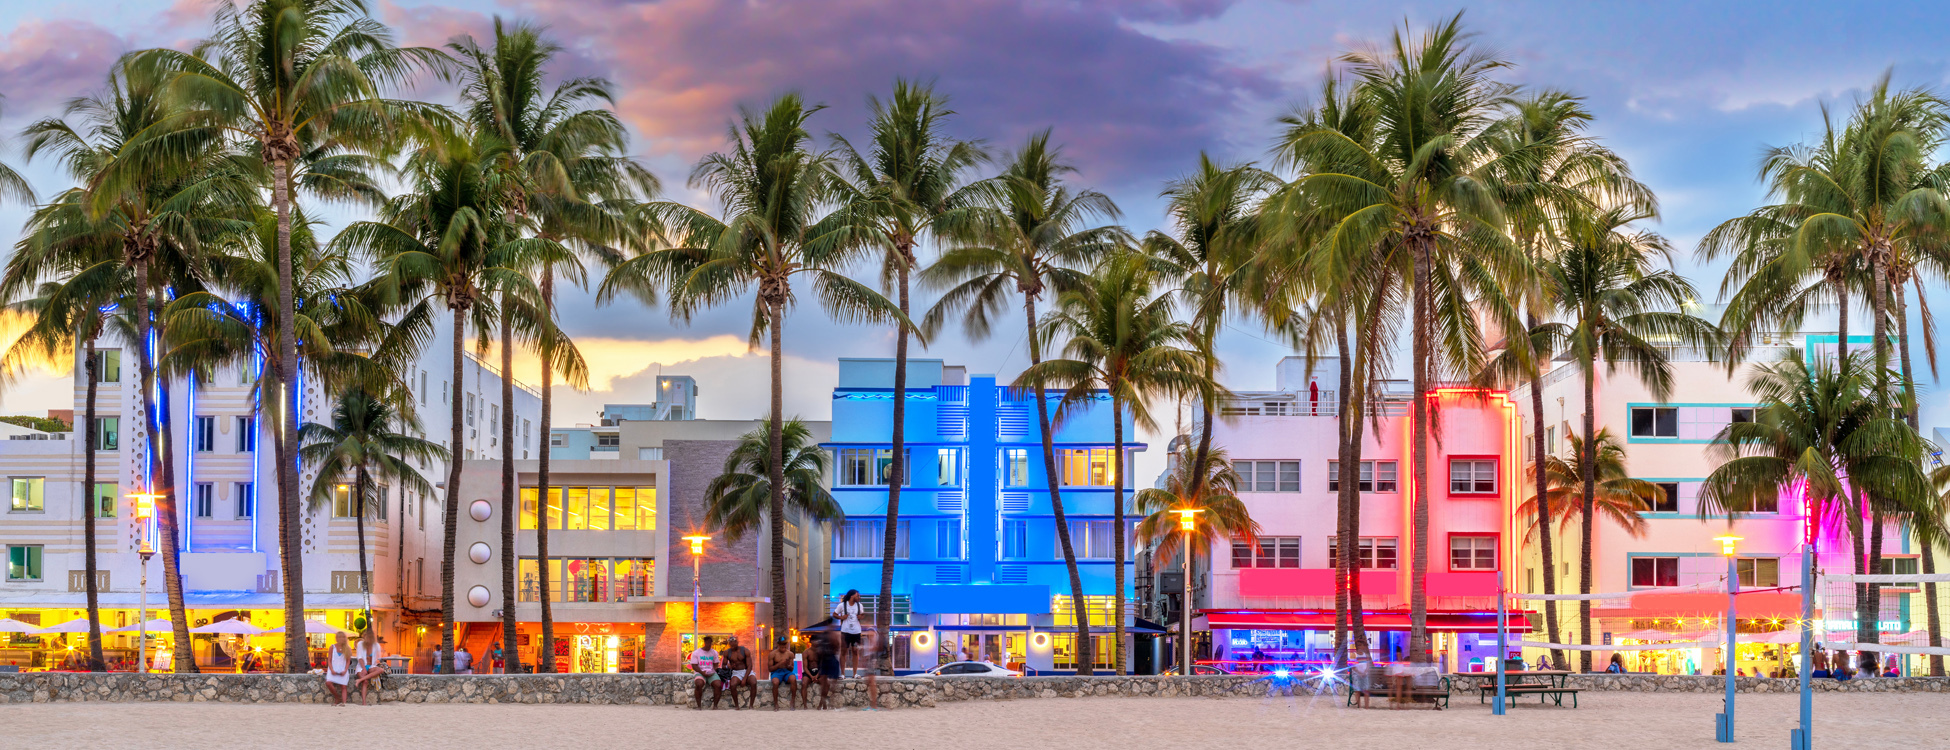 Miami Private Tour Architecture